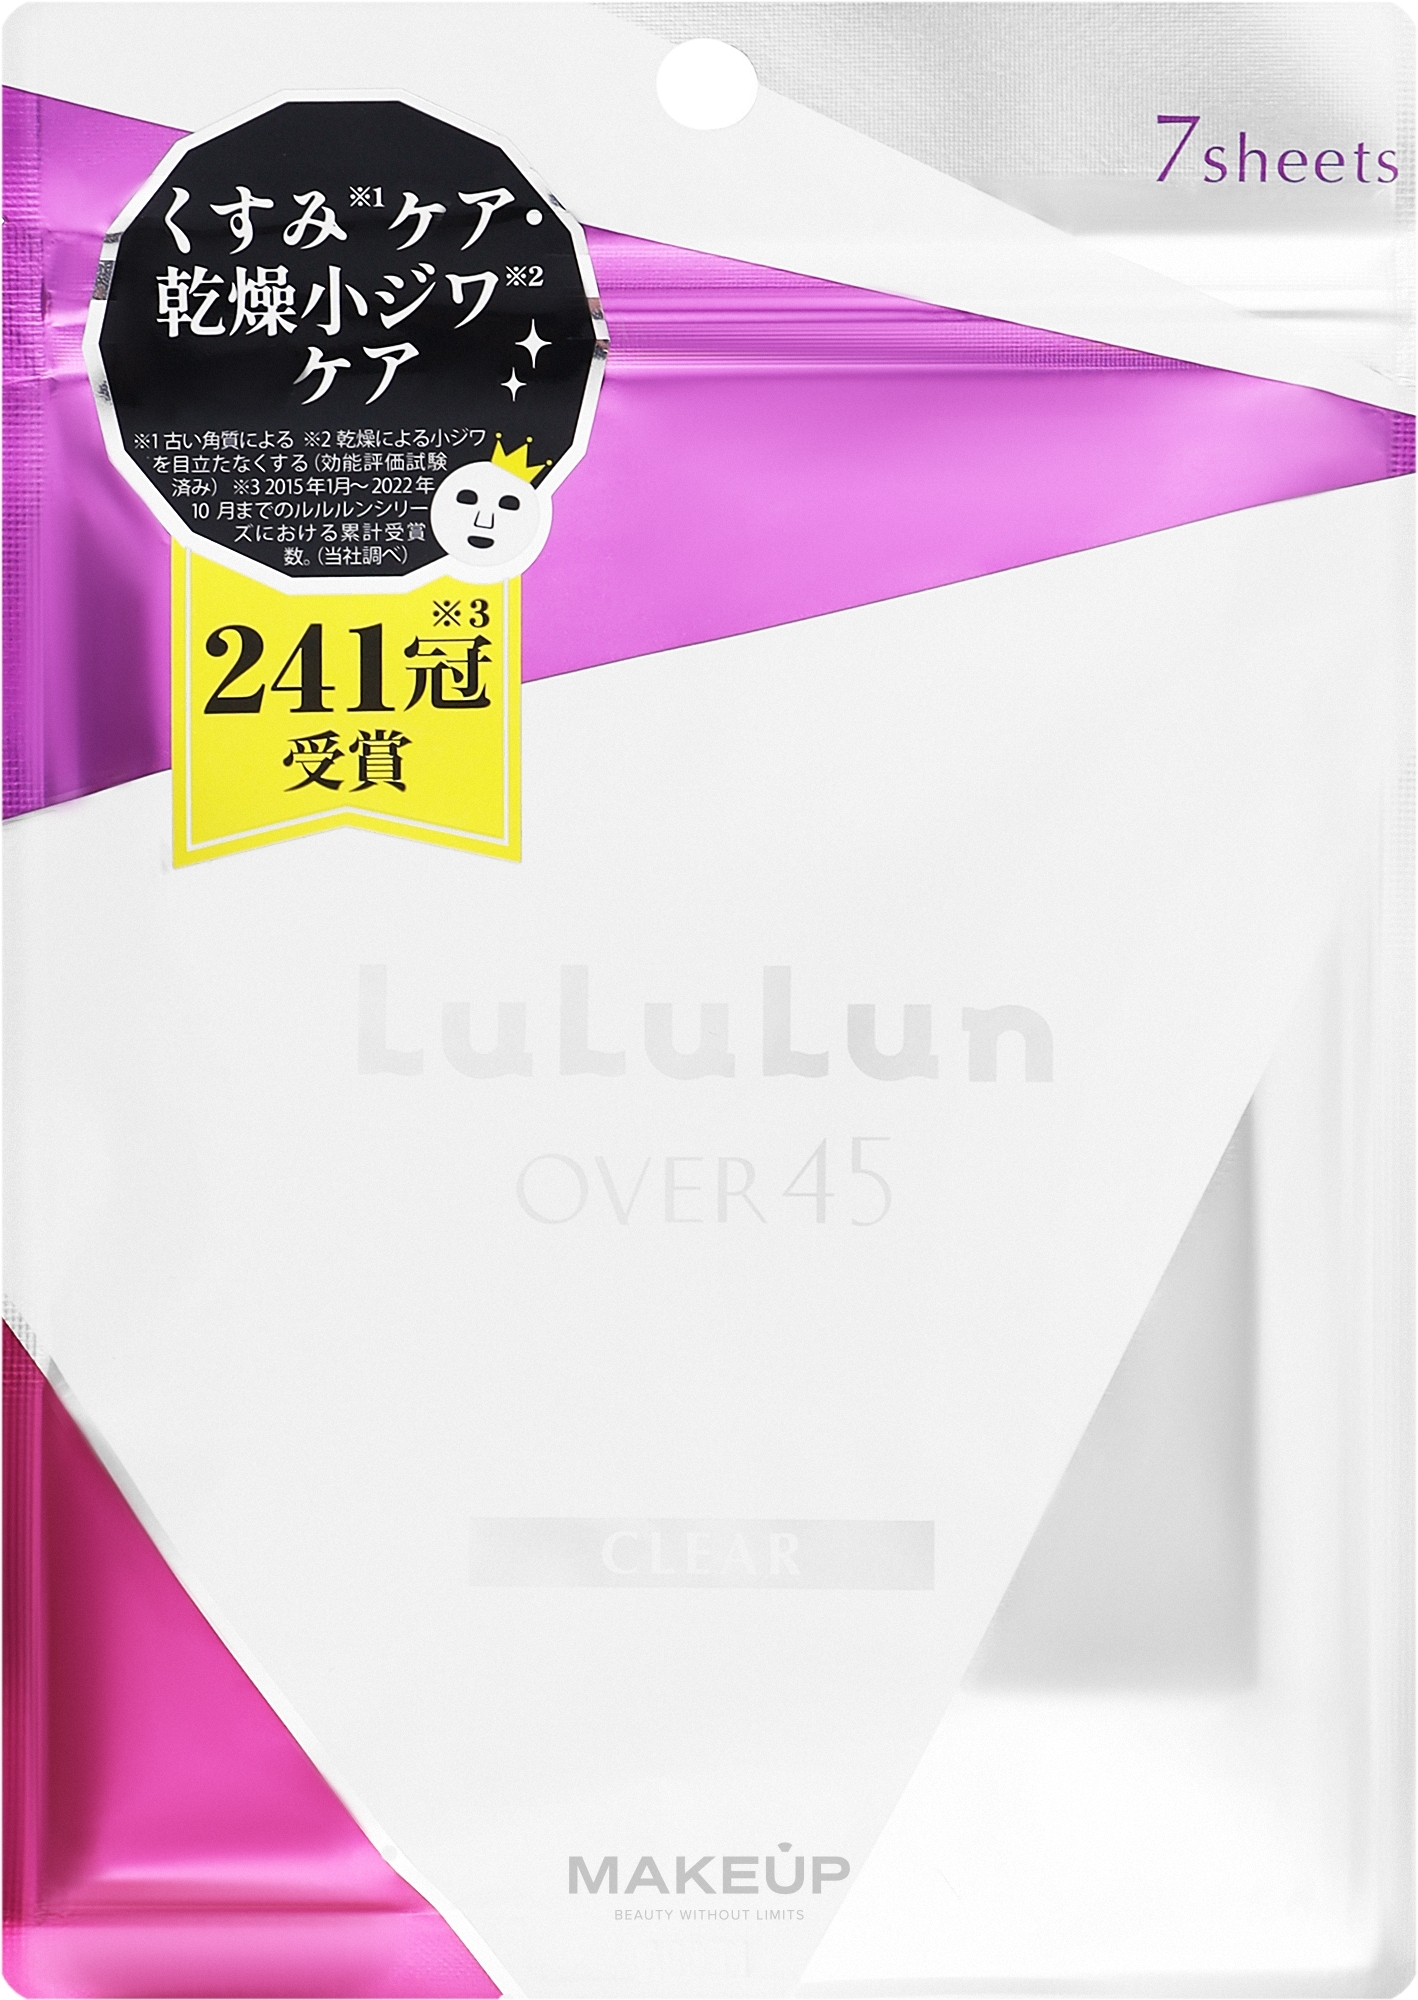 Маска для обличчя "Over 45 Iris Blue" - Lululun Premium Face Mask — фото 7шт